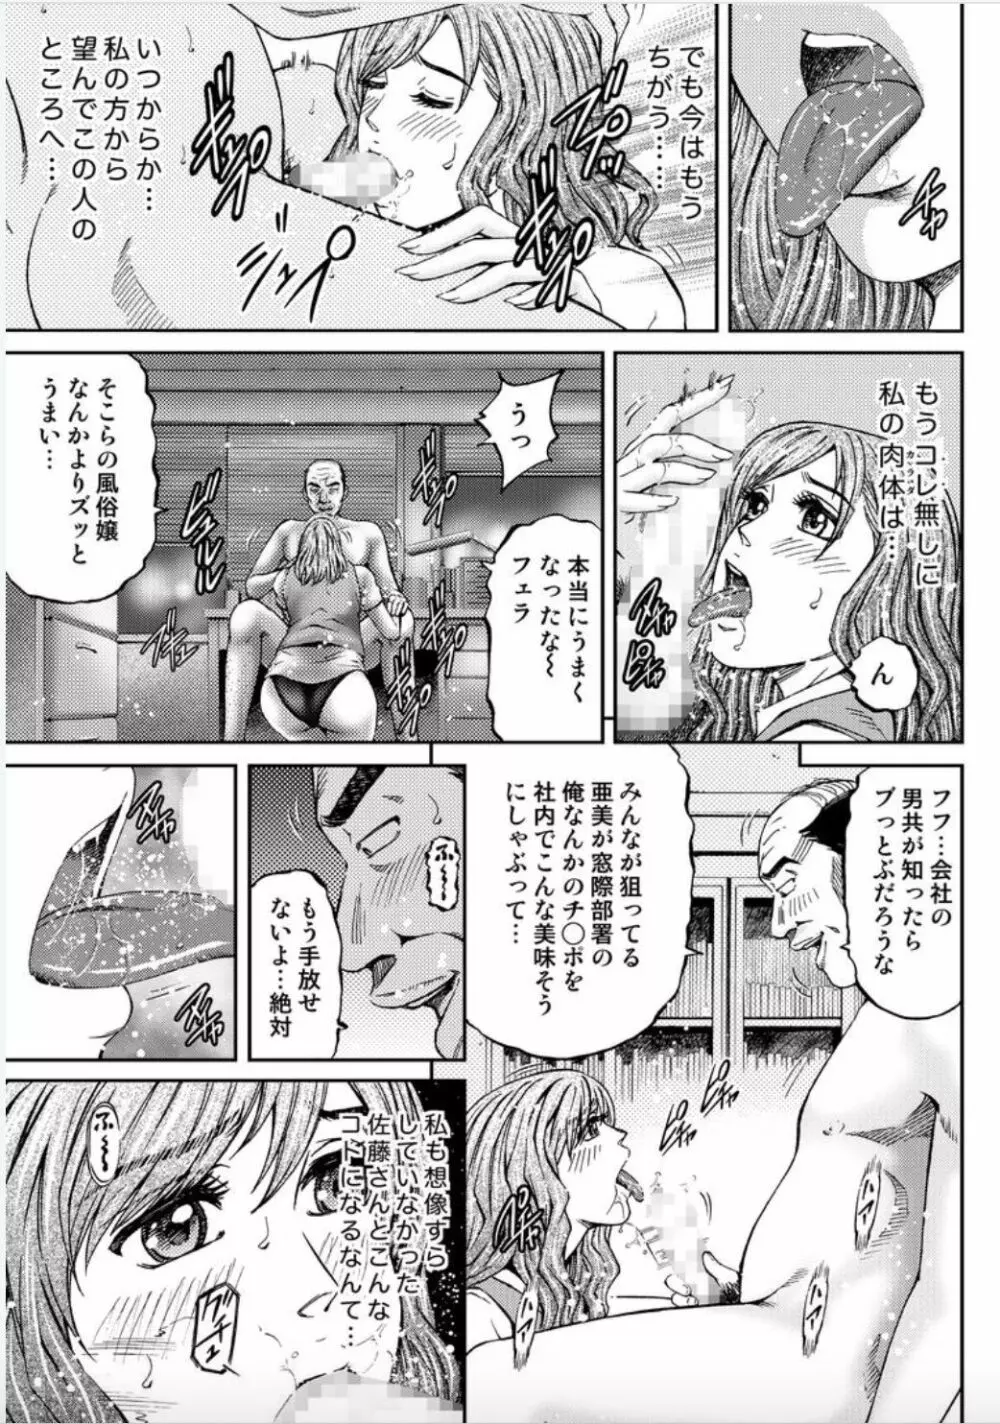 女たちがイクとき…エロドラマ Vol.6 イン・ザ・ルーム 13ページ